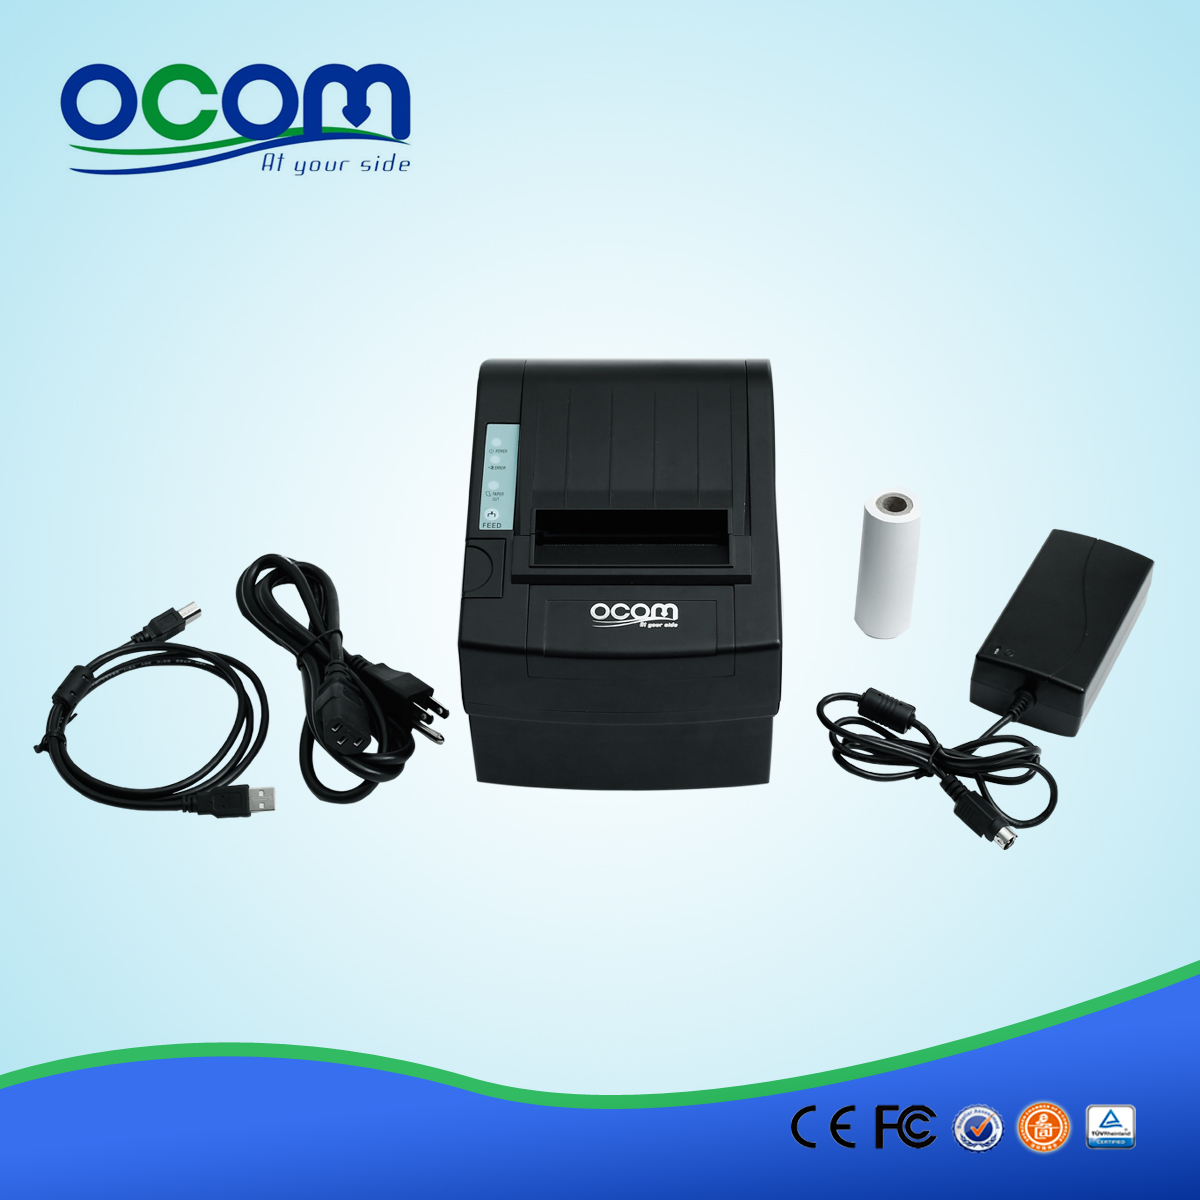 中国高品质的无线WIFI POS收据打印机OCPP-806-W